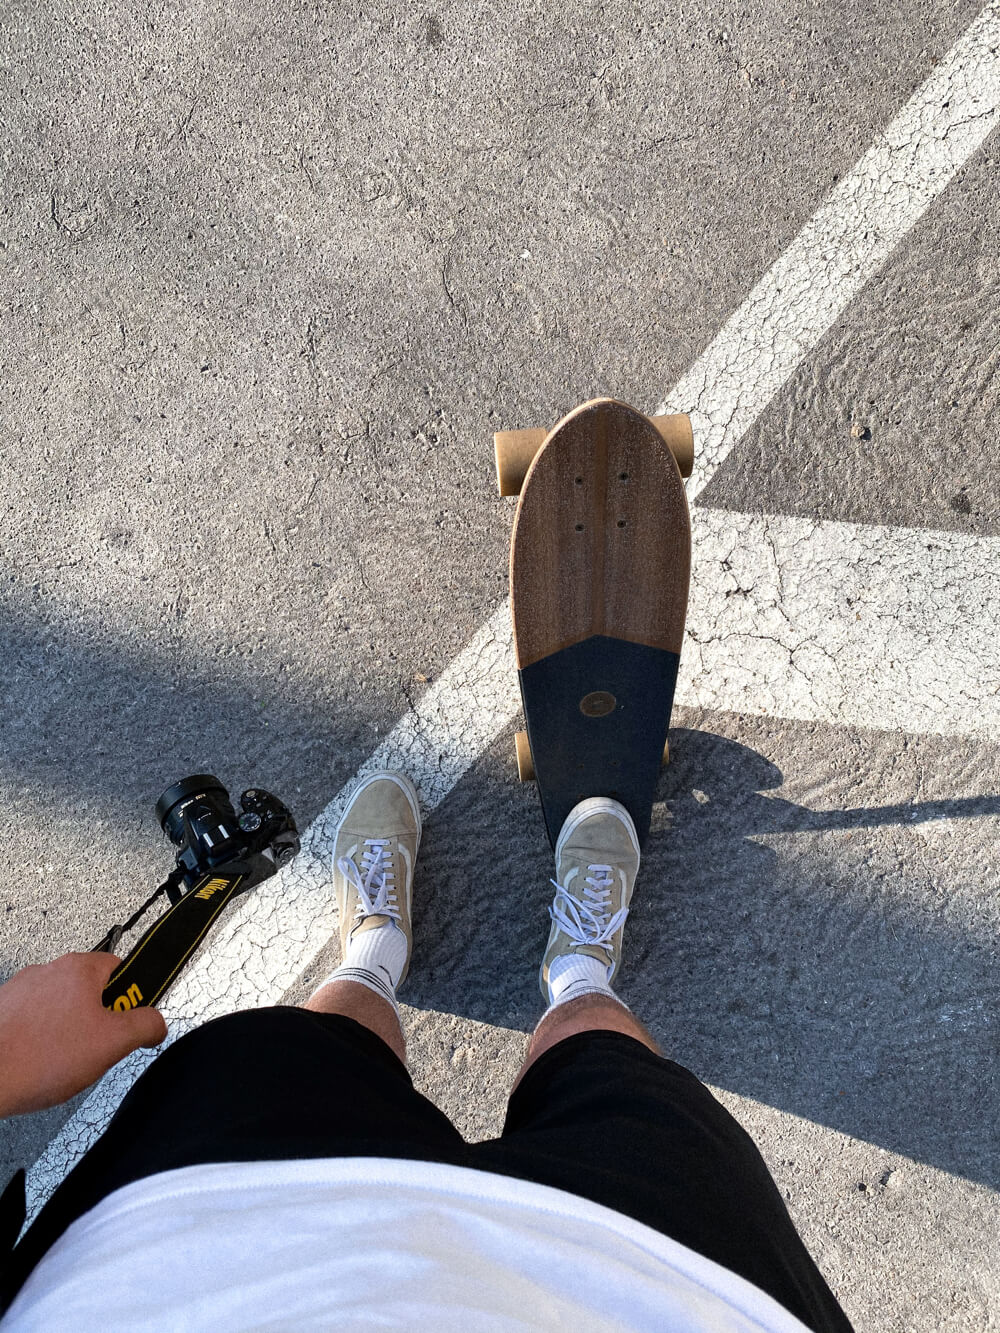 A trip to Skatepark Los Reyes